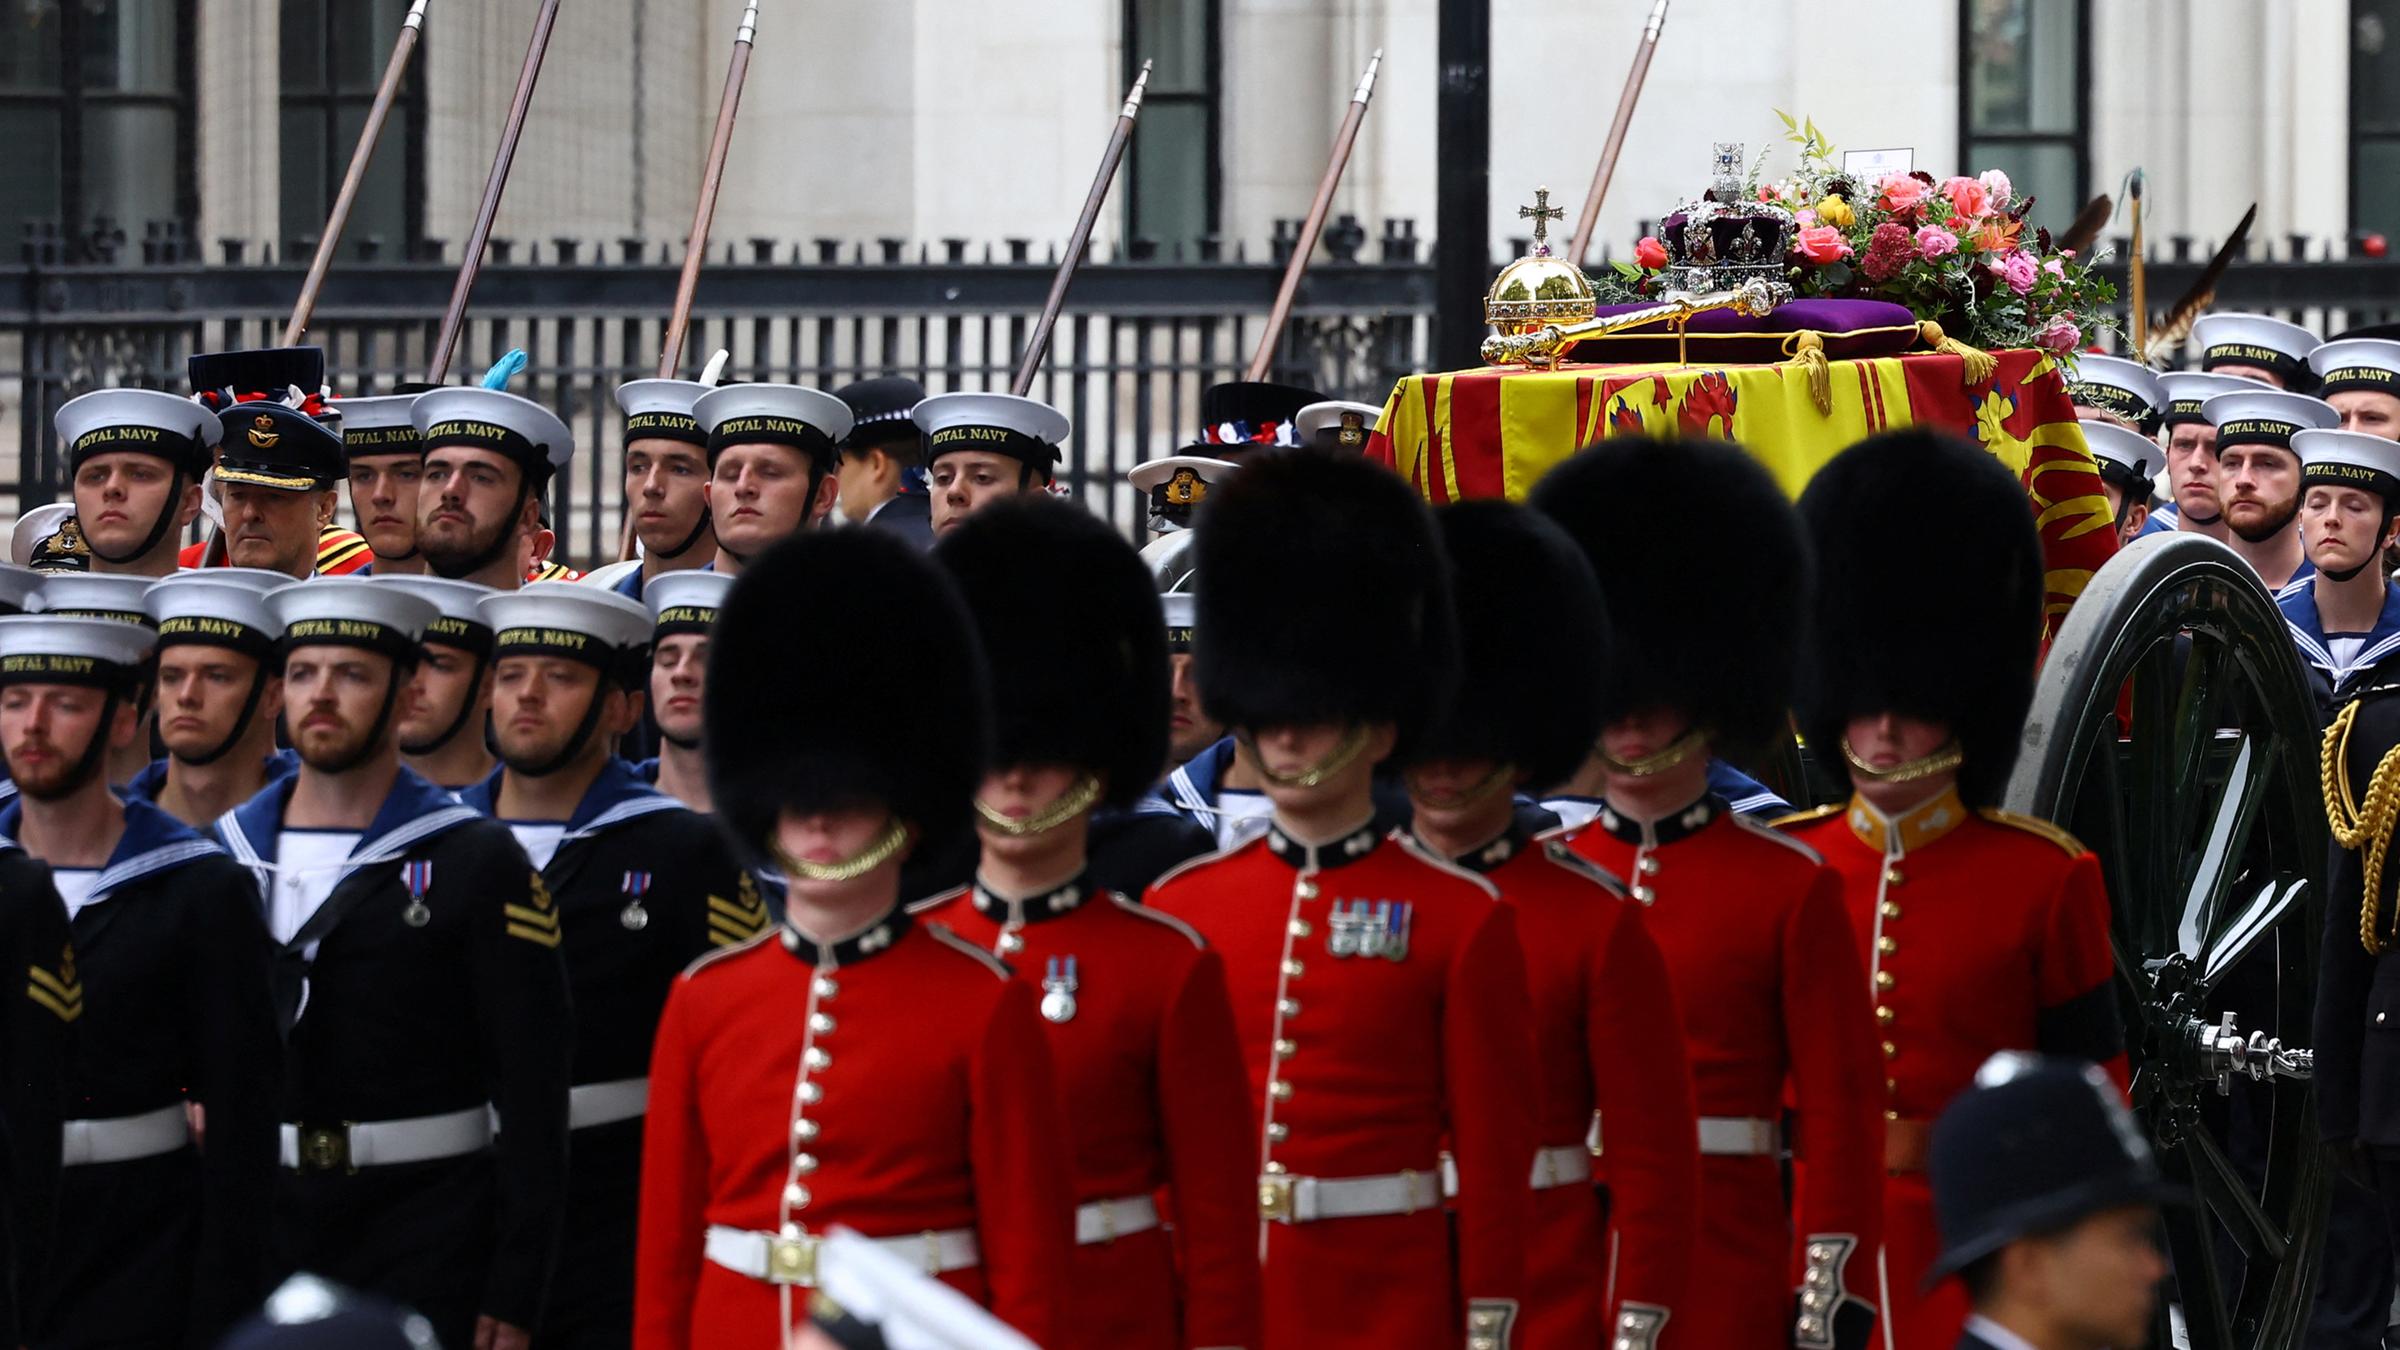 Der Sarg der britischen Königin Elizabeth II. wird am Tag ihrer staatlichen Beerdigung während eines Trauerzuges getragen